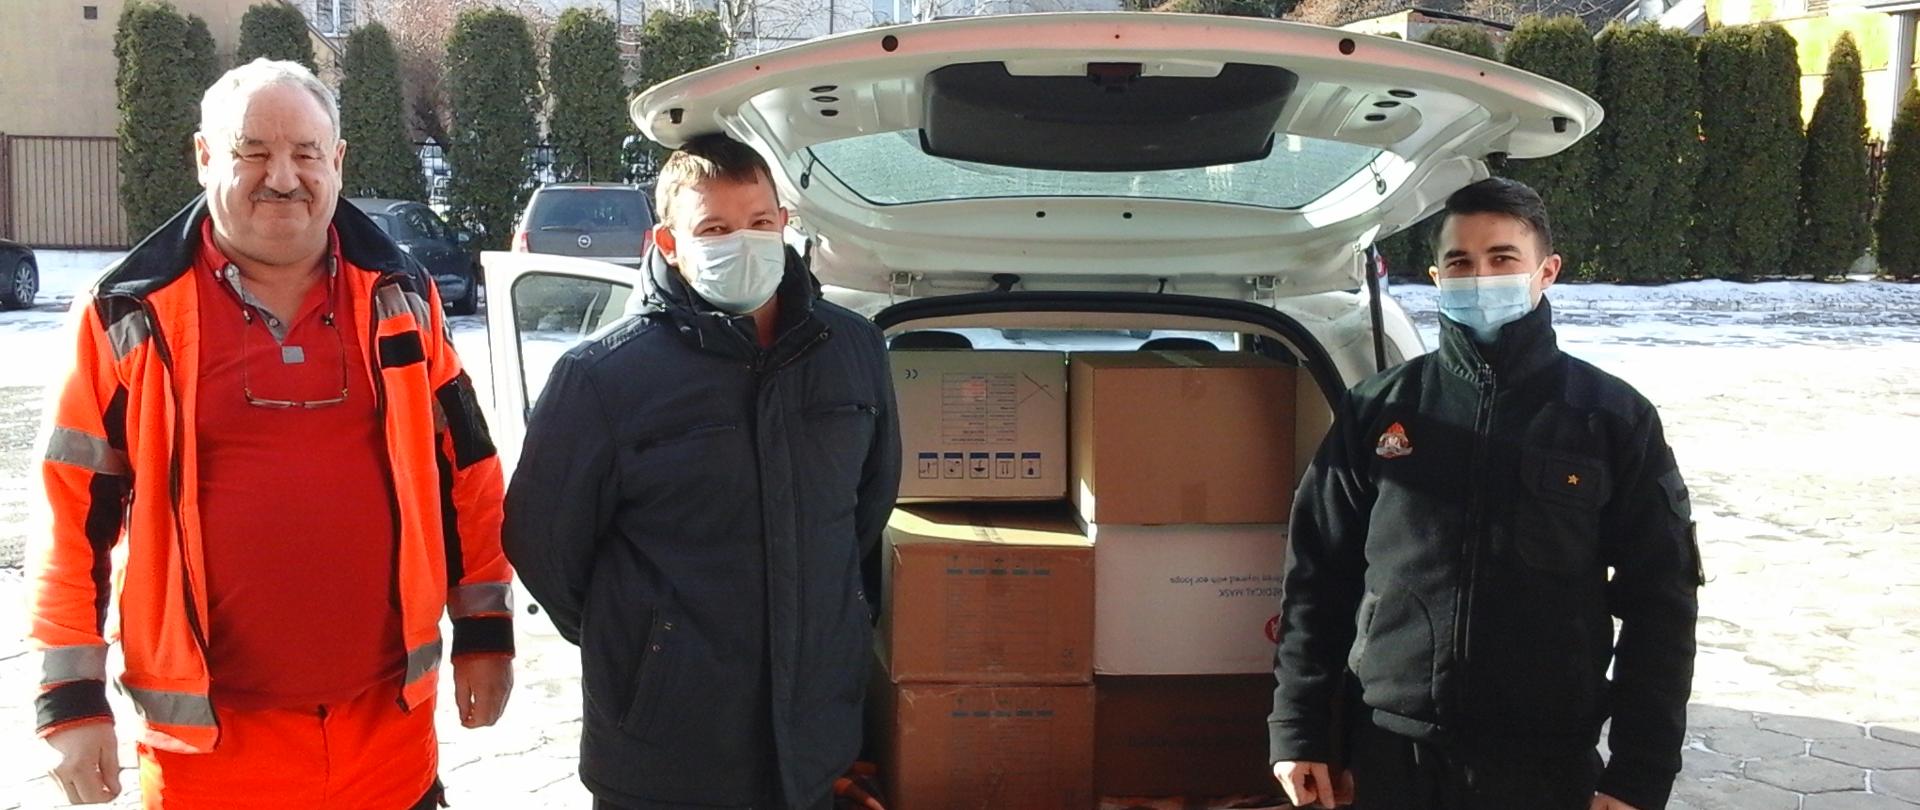 Zdjęcie przedstawia trzy osoby, tj. (od lewej) dwaj pracownicy Szpitala Ogólnego w Kolnie oraz strażak JRG Kolno. W tle pojazd z otwartą przestrzenią bagażową, w której znajdują się kartony z maseczkami.